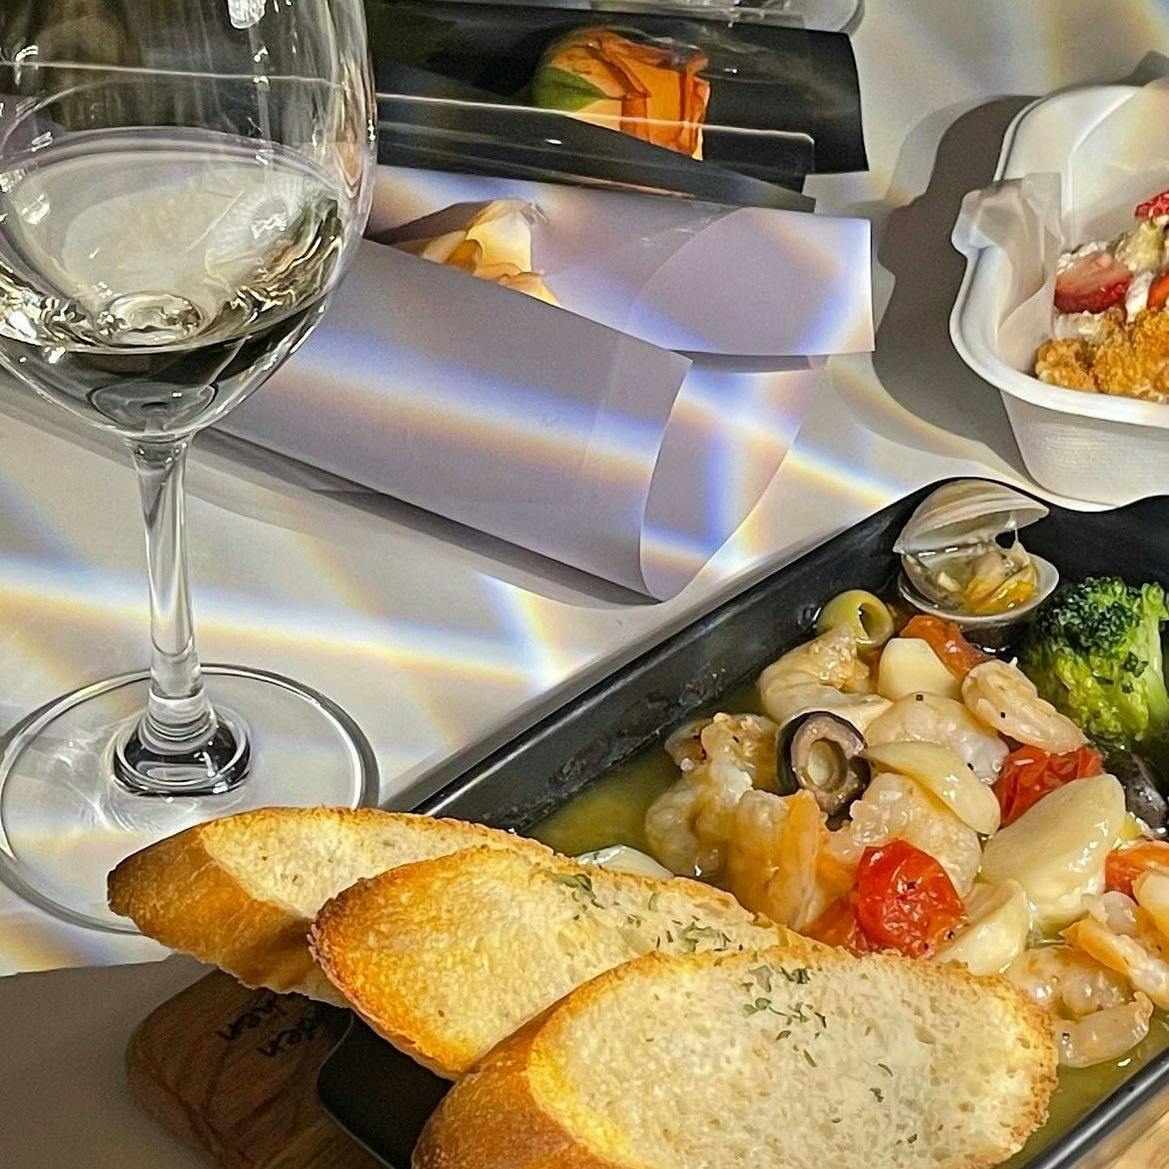 @thehueil_casual_wine_dining의 공식 홍보 사진이다. 감바스와 피자, 와인, 파스타가 나와있다.